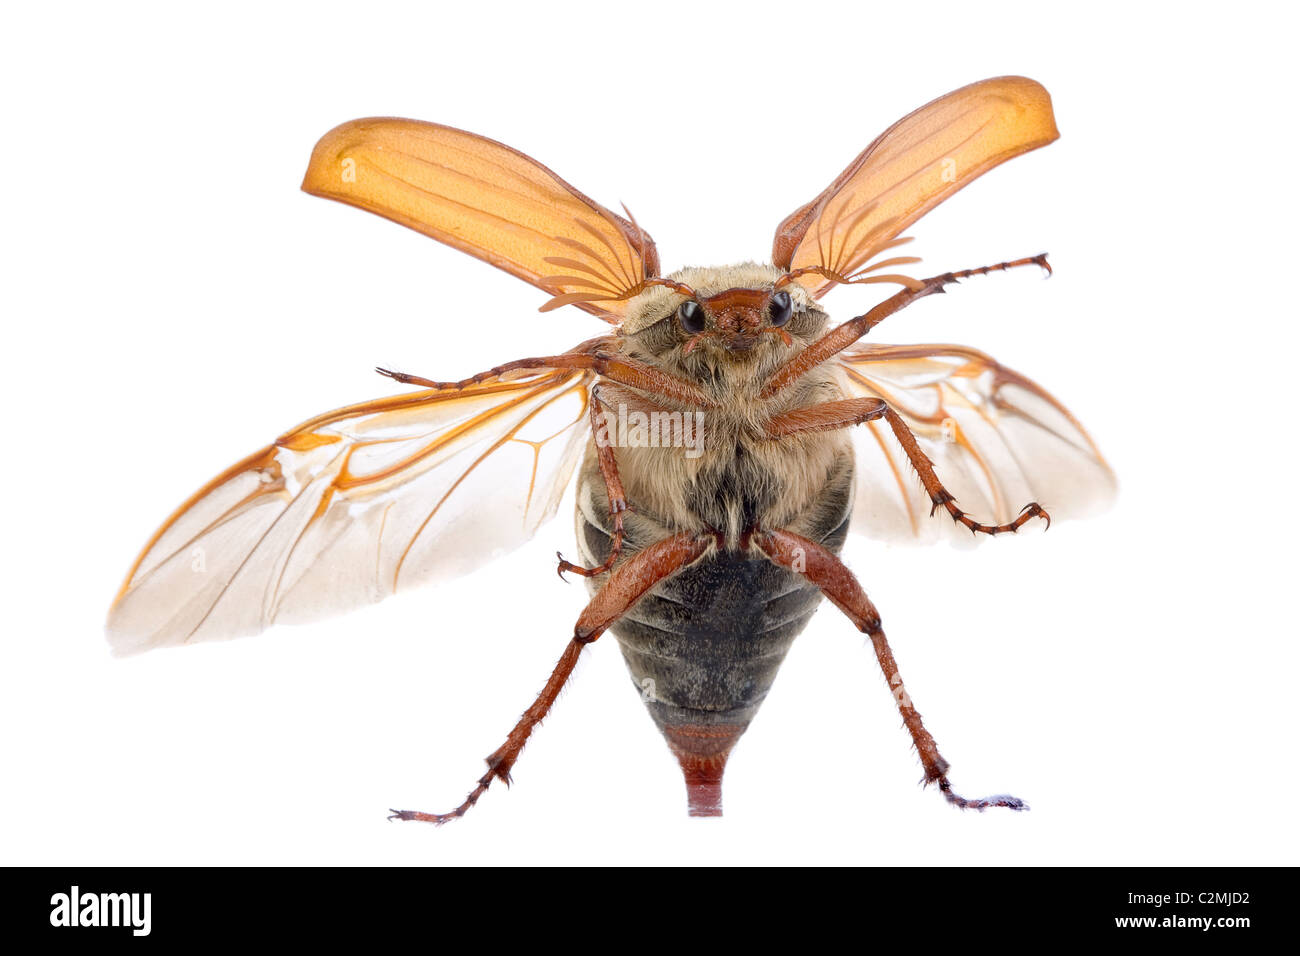 Maybug escarabajo volando contra una ventana de vidrio Foto de stock